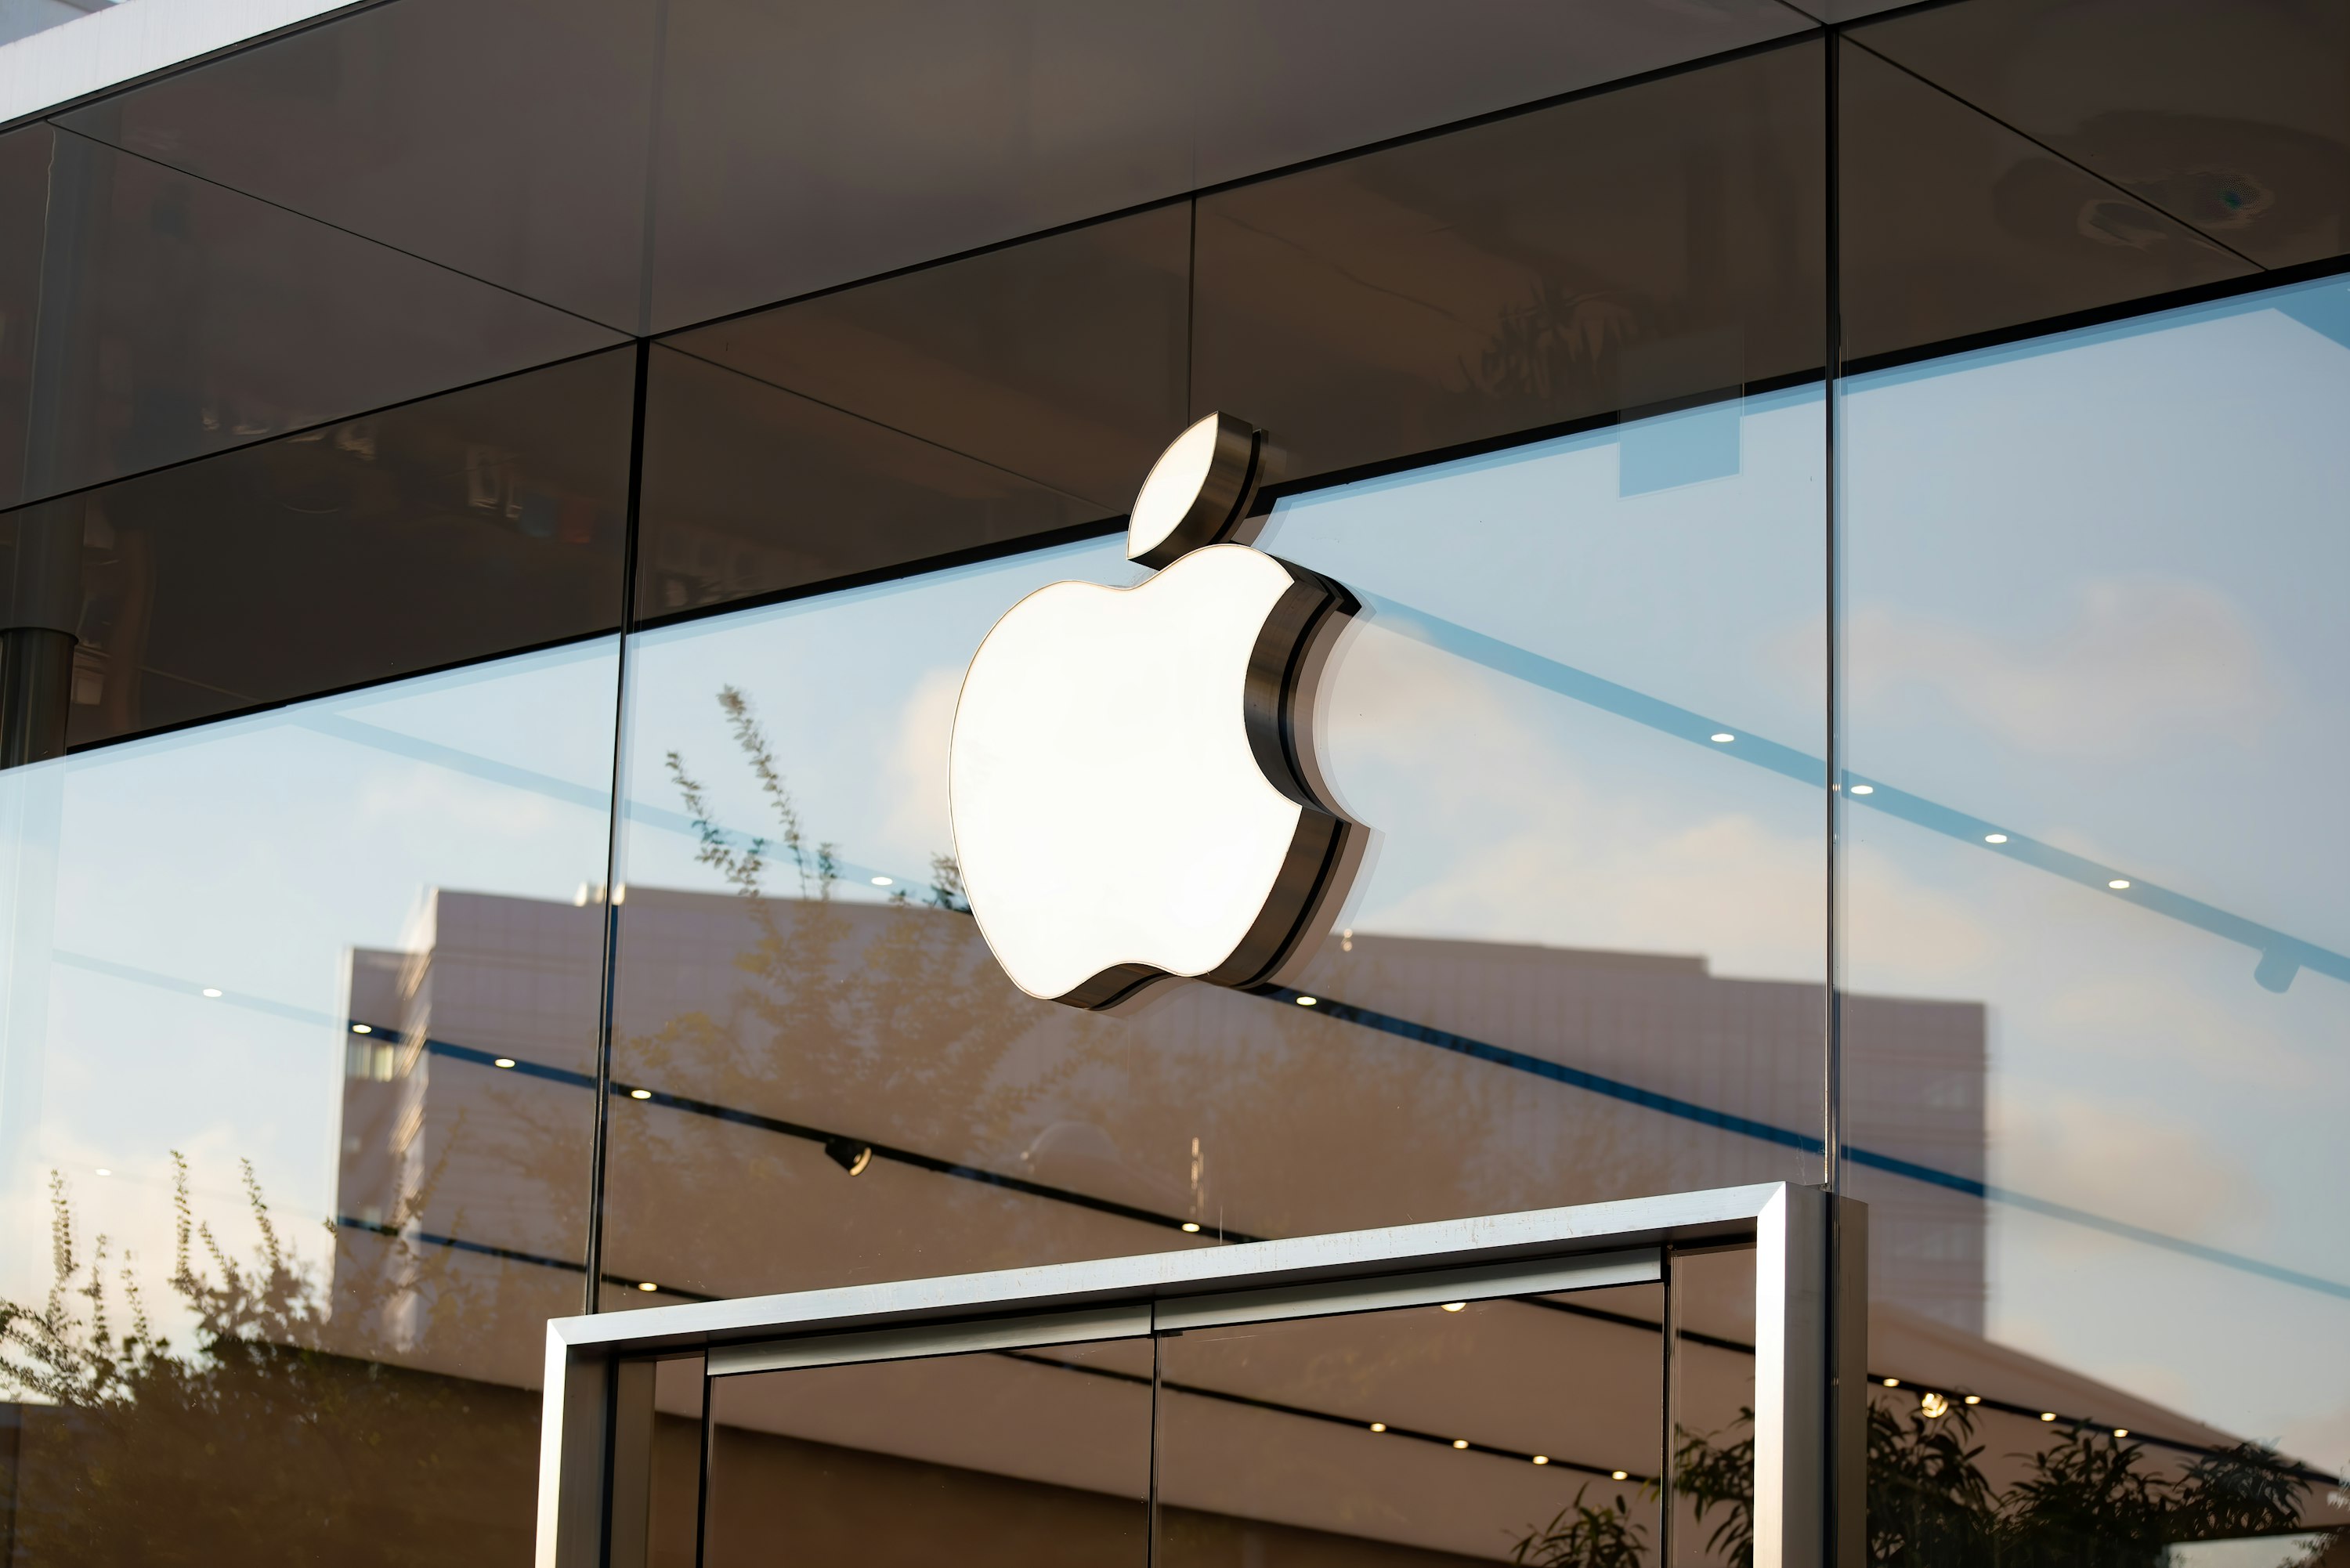 Maçã trincada da Apple num vidro que integra a fachada de um edifício. Abaixo, vê-se a parte superior de uma porta de vidro.